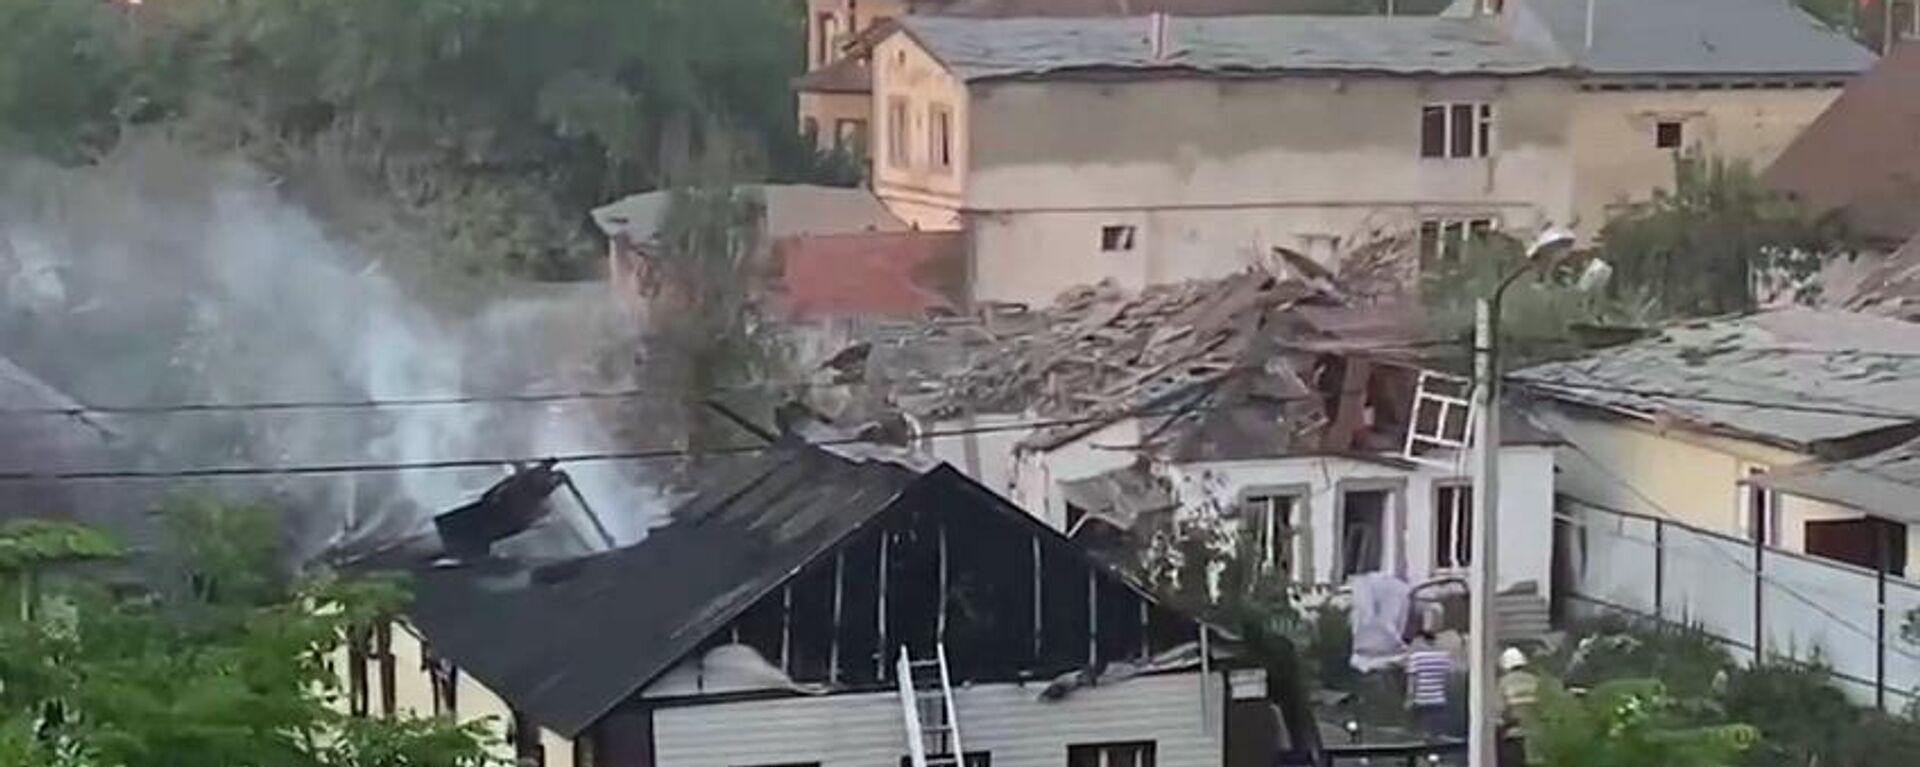 Las consecuencias del ataque de Ucrania a las zonas residenciales de Bélgorod y Kursk - Sputnik Mundo, 1920, 03.07.2022